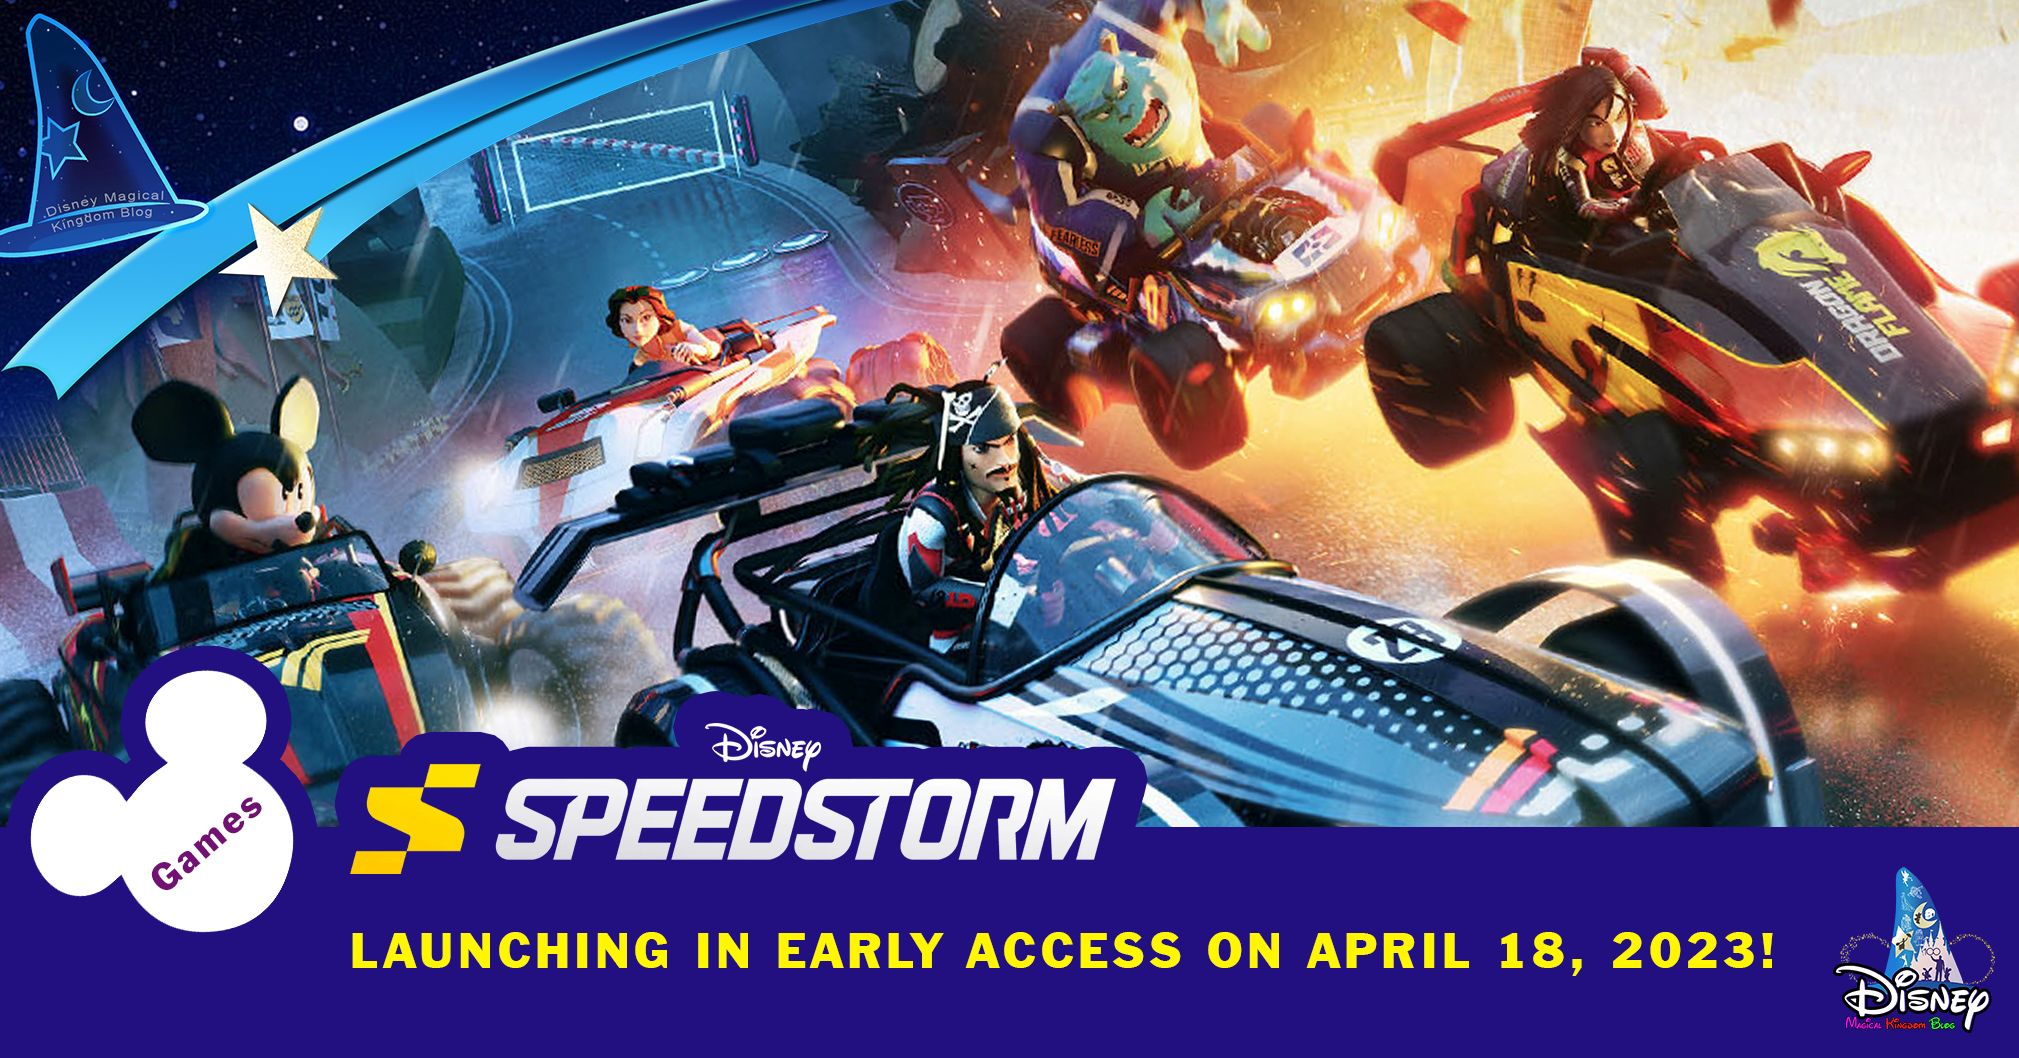 Disney Speedstorm (Multi) será lançado em acesso antecipado em 18